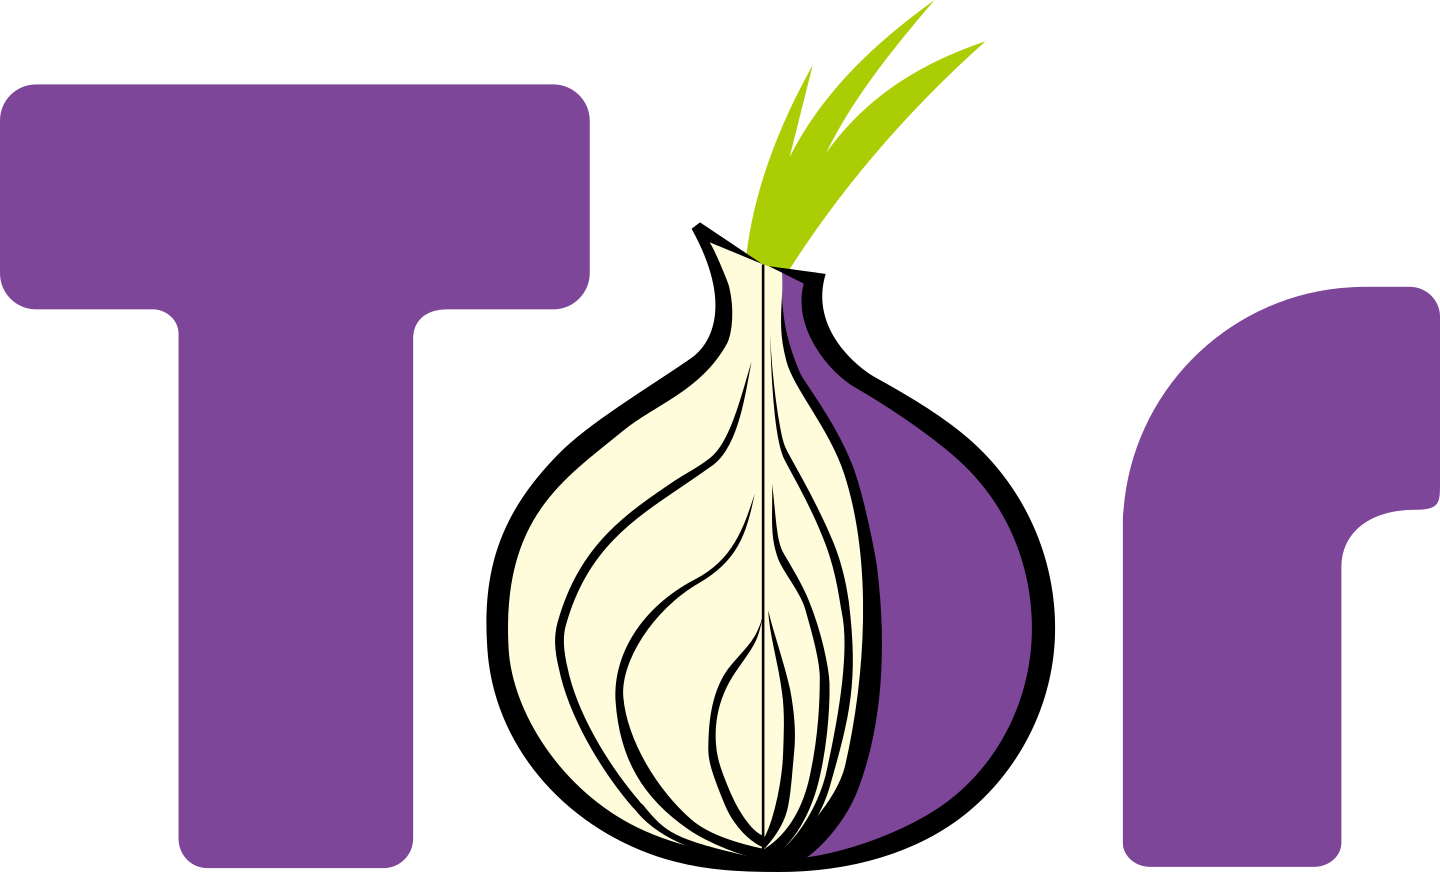 tor logo 2 - TOR Logo